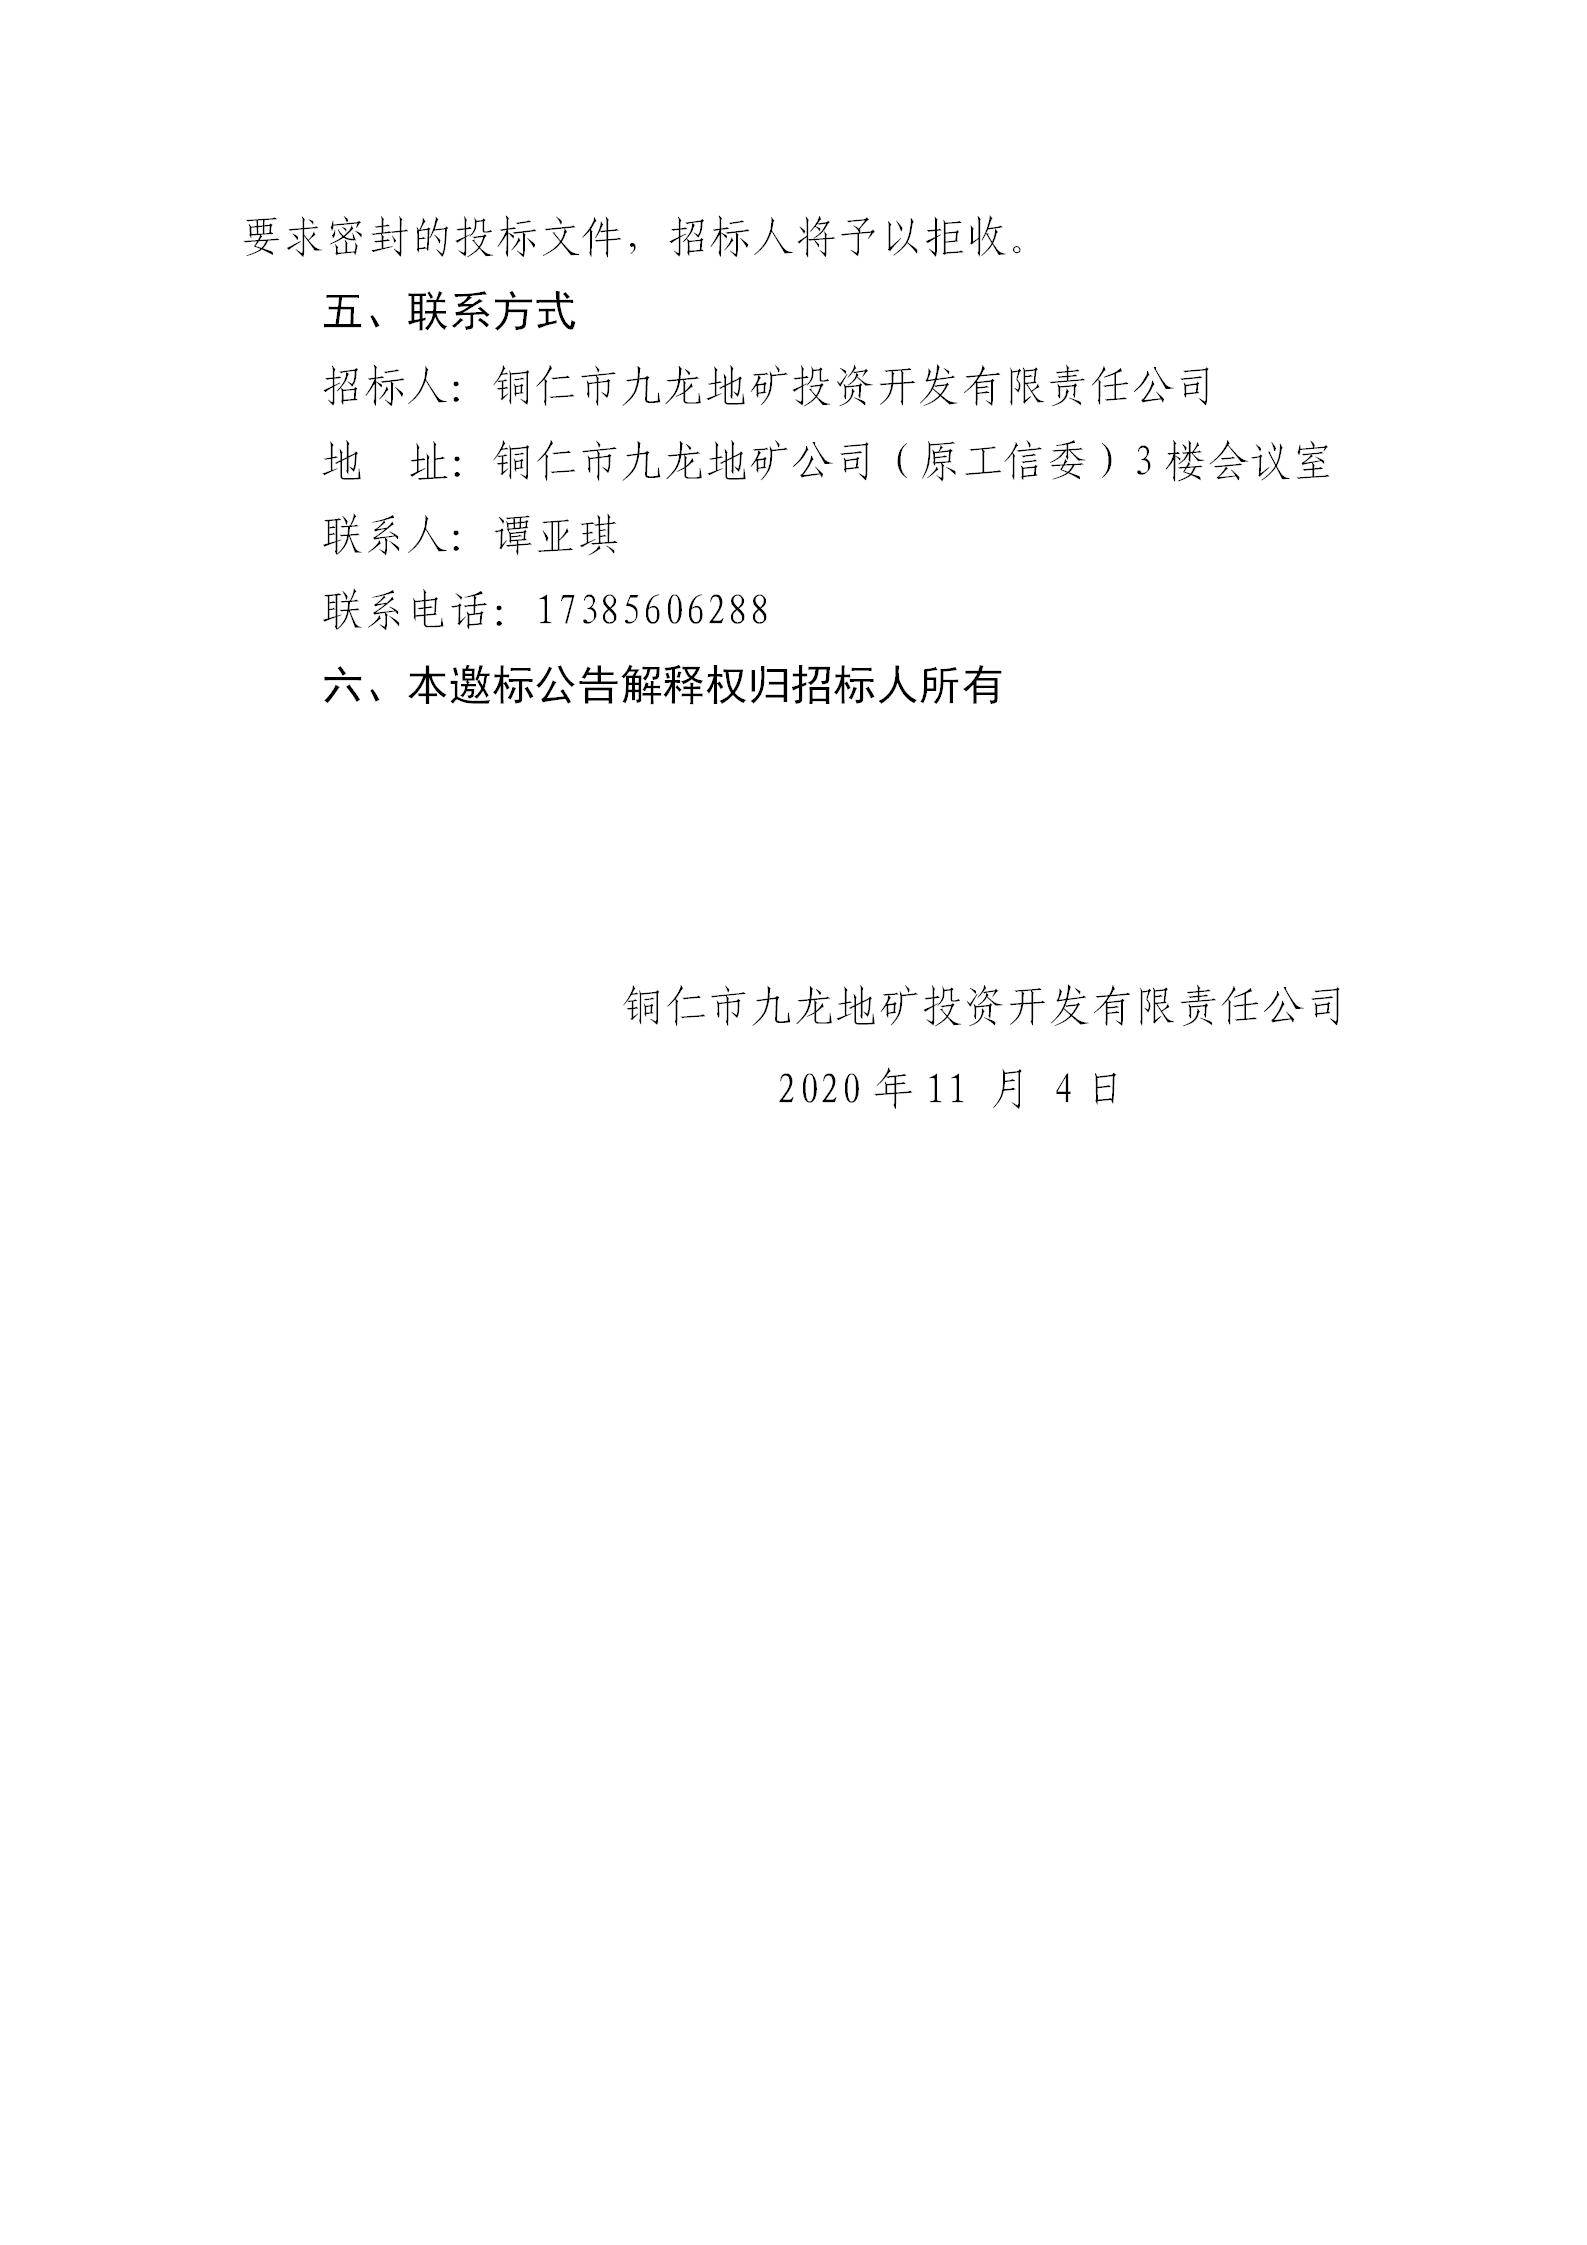 铜仁城投集团房地产销售中心沙盘制作邀请招标公告